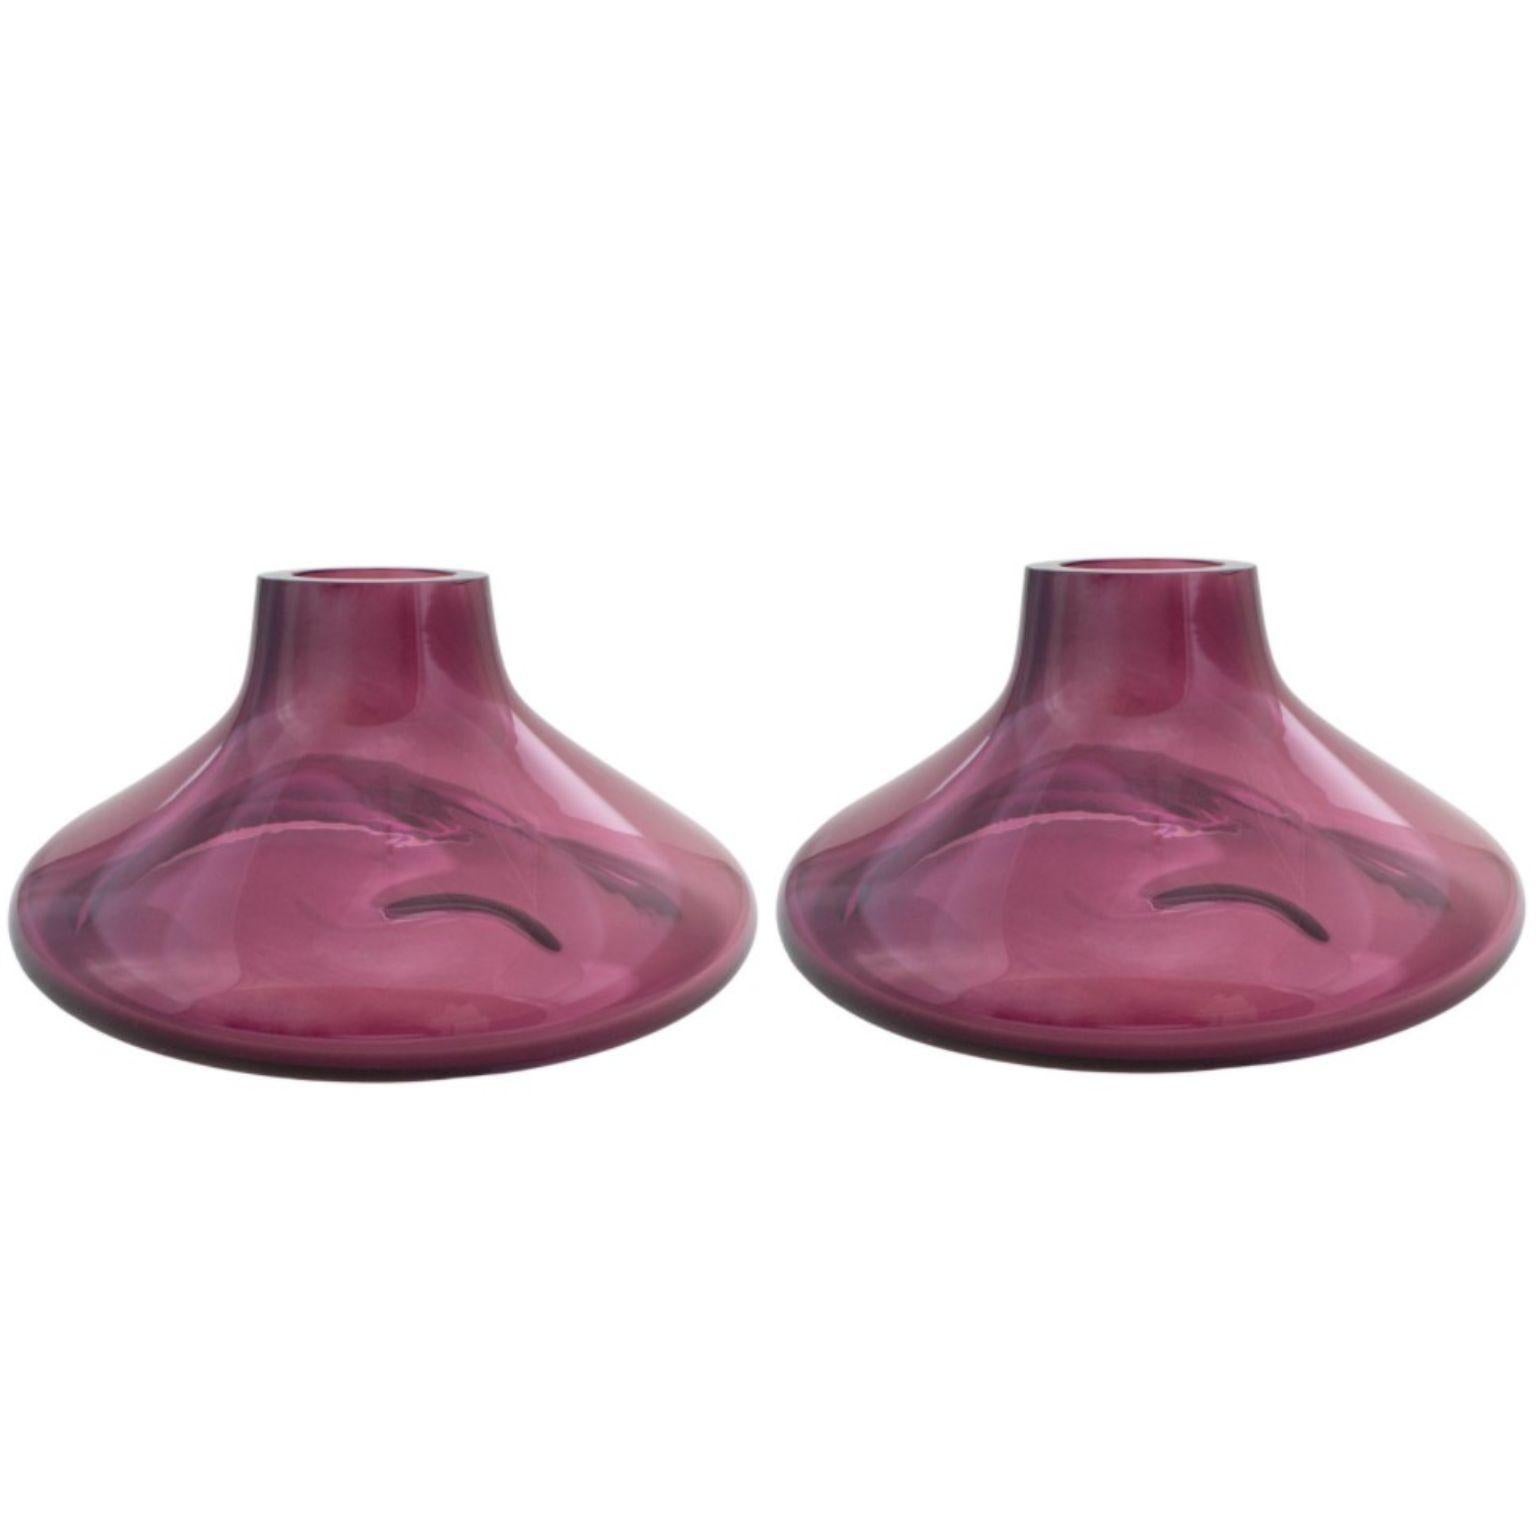 2er-Set Makemake Purple Iridescent L Vase + Schale von Eloa.
Nicht UL-gelistet 
MATERIAL: Glas
Abmessungen: T40 x B40 x H25 cm
Auch in anderen Farben und Abmessungen erhältlich.

Der Makemake erinnert an den Ring des Jupiters. Das Objekt wurde mit